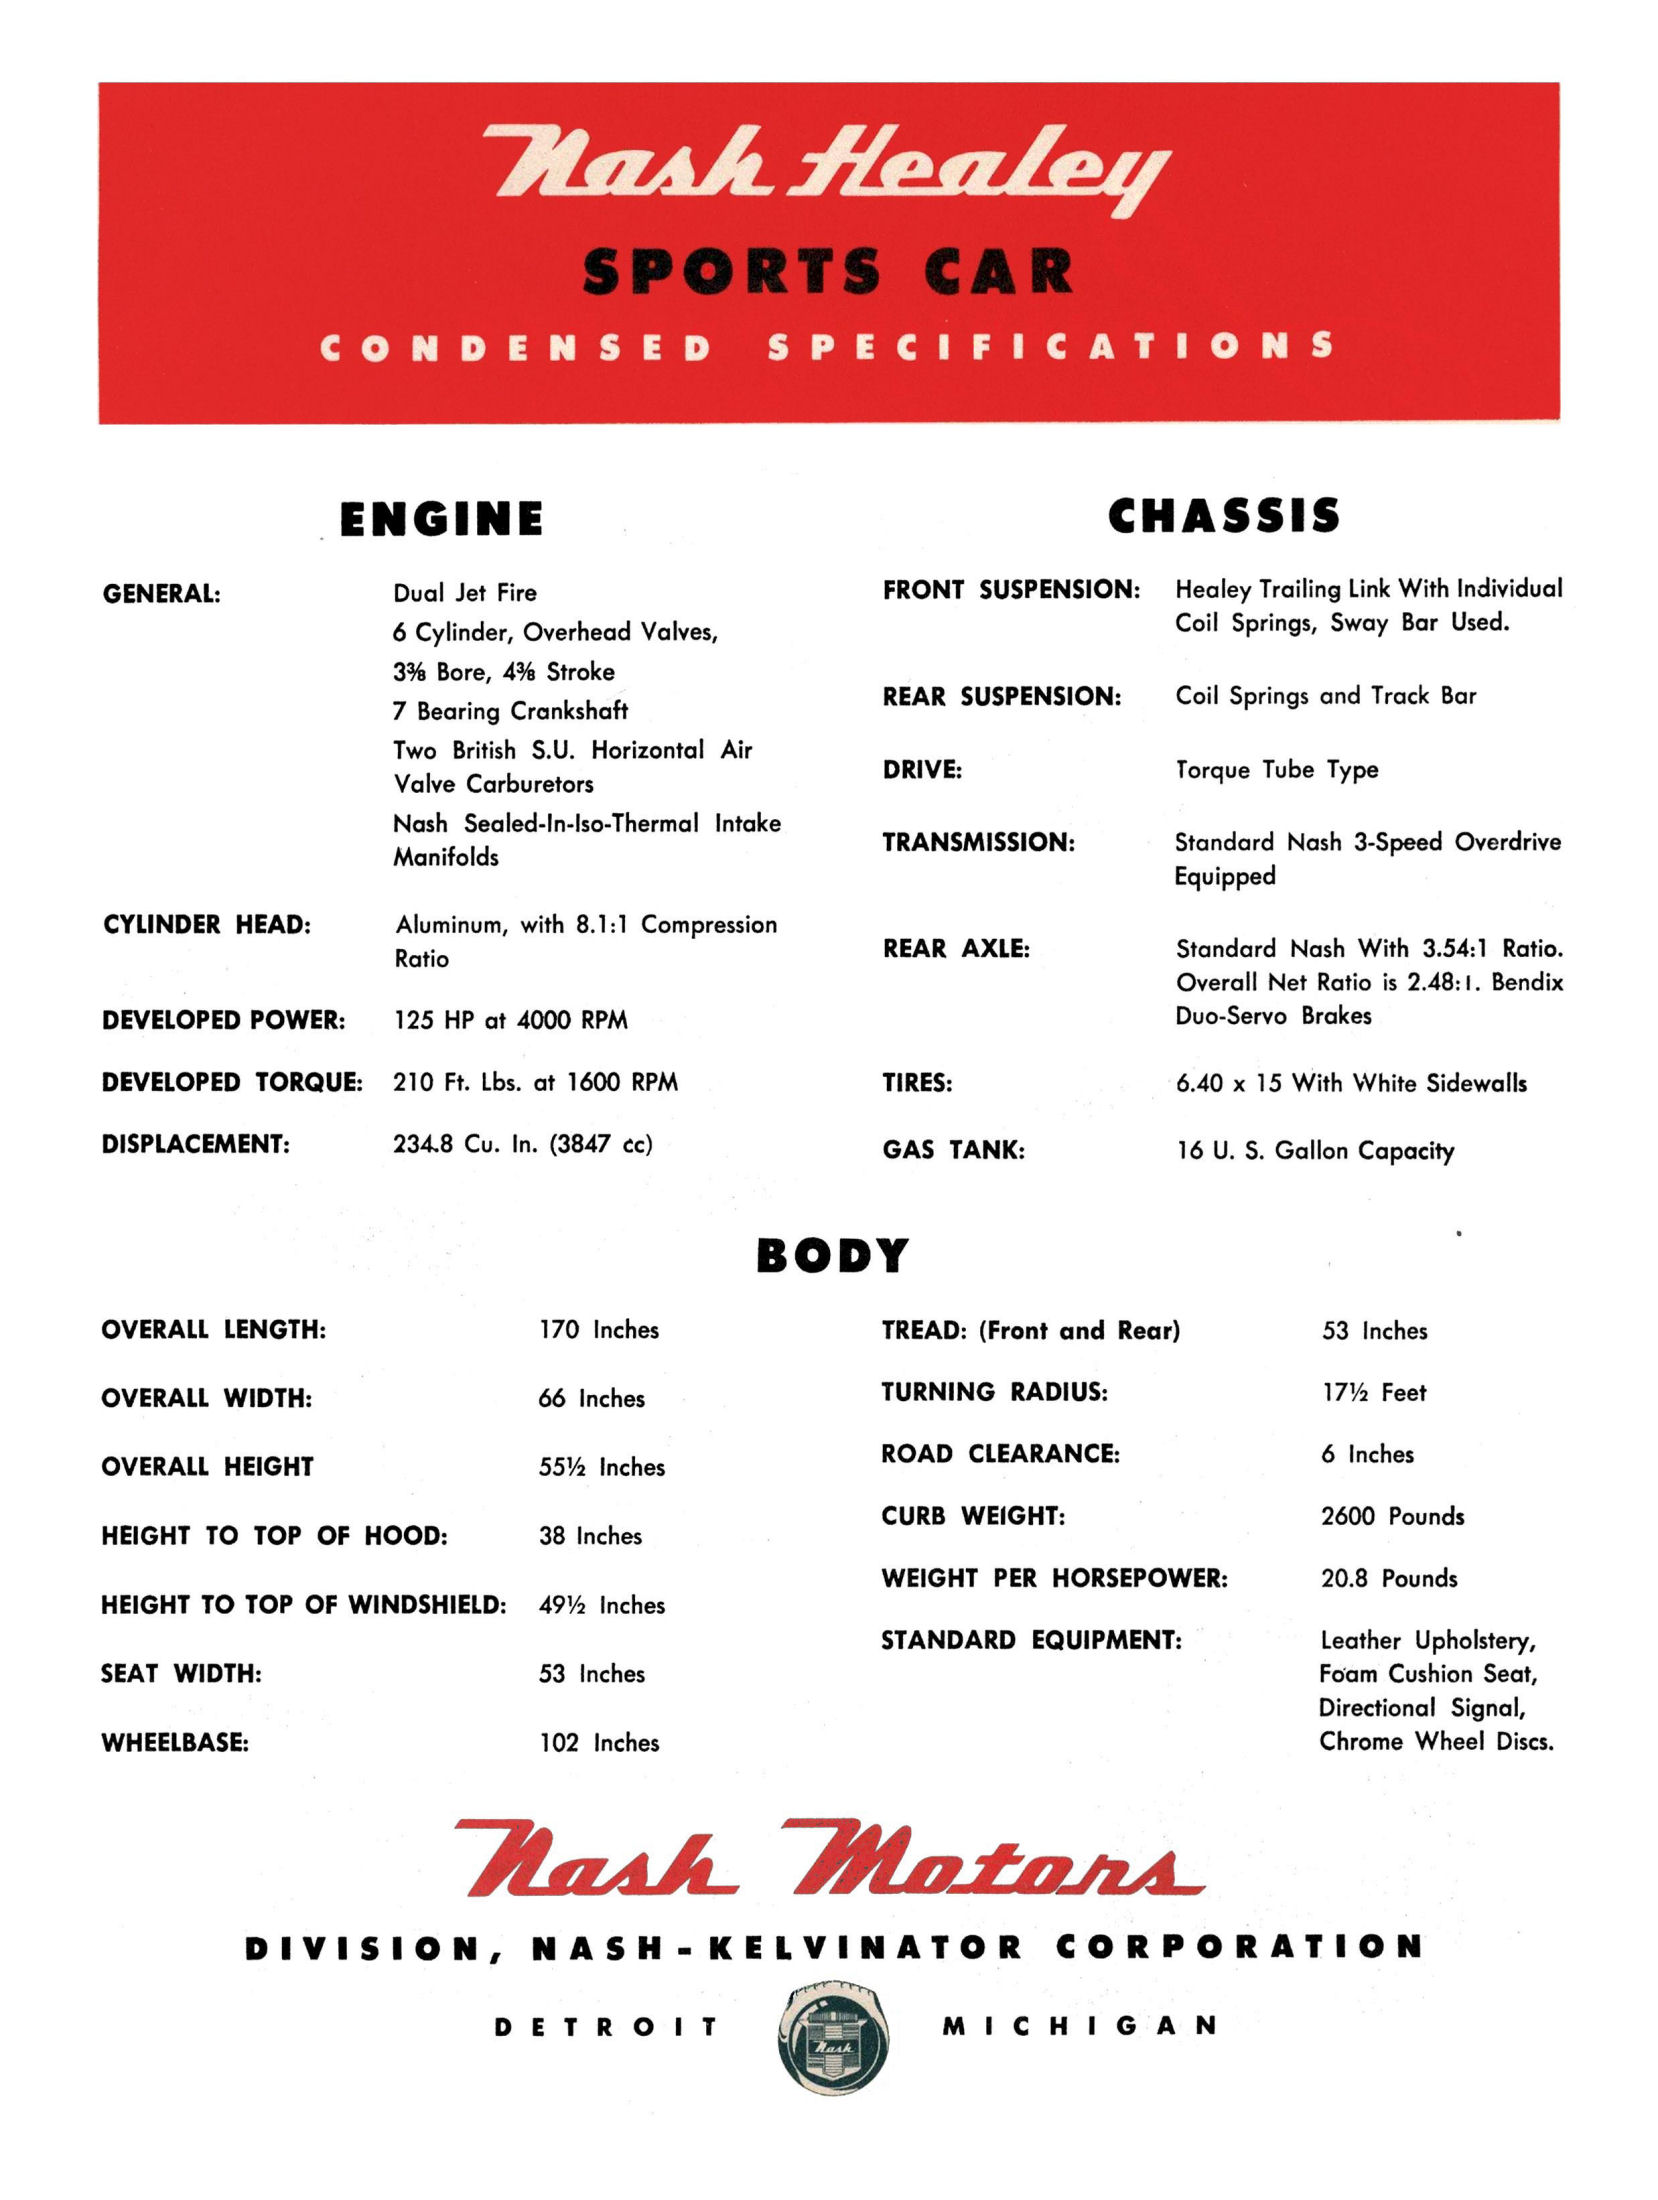 1951 Nash Healey Data Sheet-02